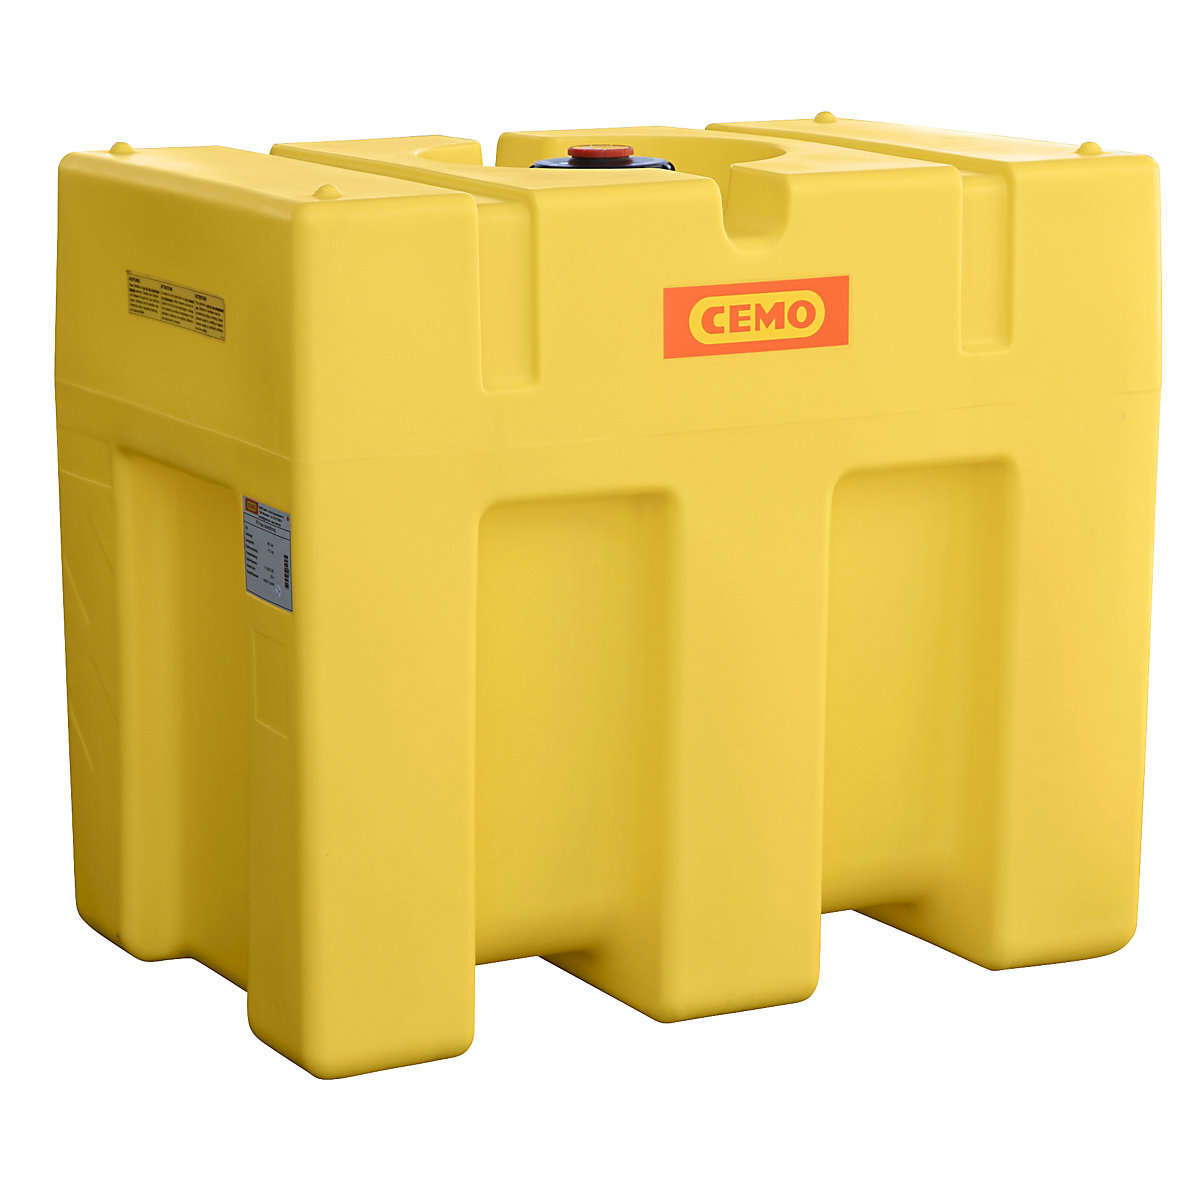 CEMO – Butoi din PE pentru apă, sub formă de cutie, galben, butoi PE, sub formă de cutie 600 l